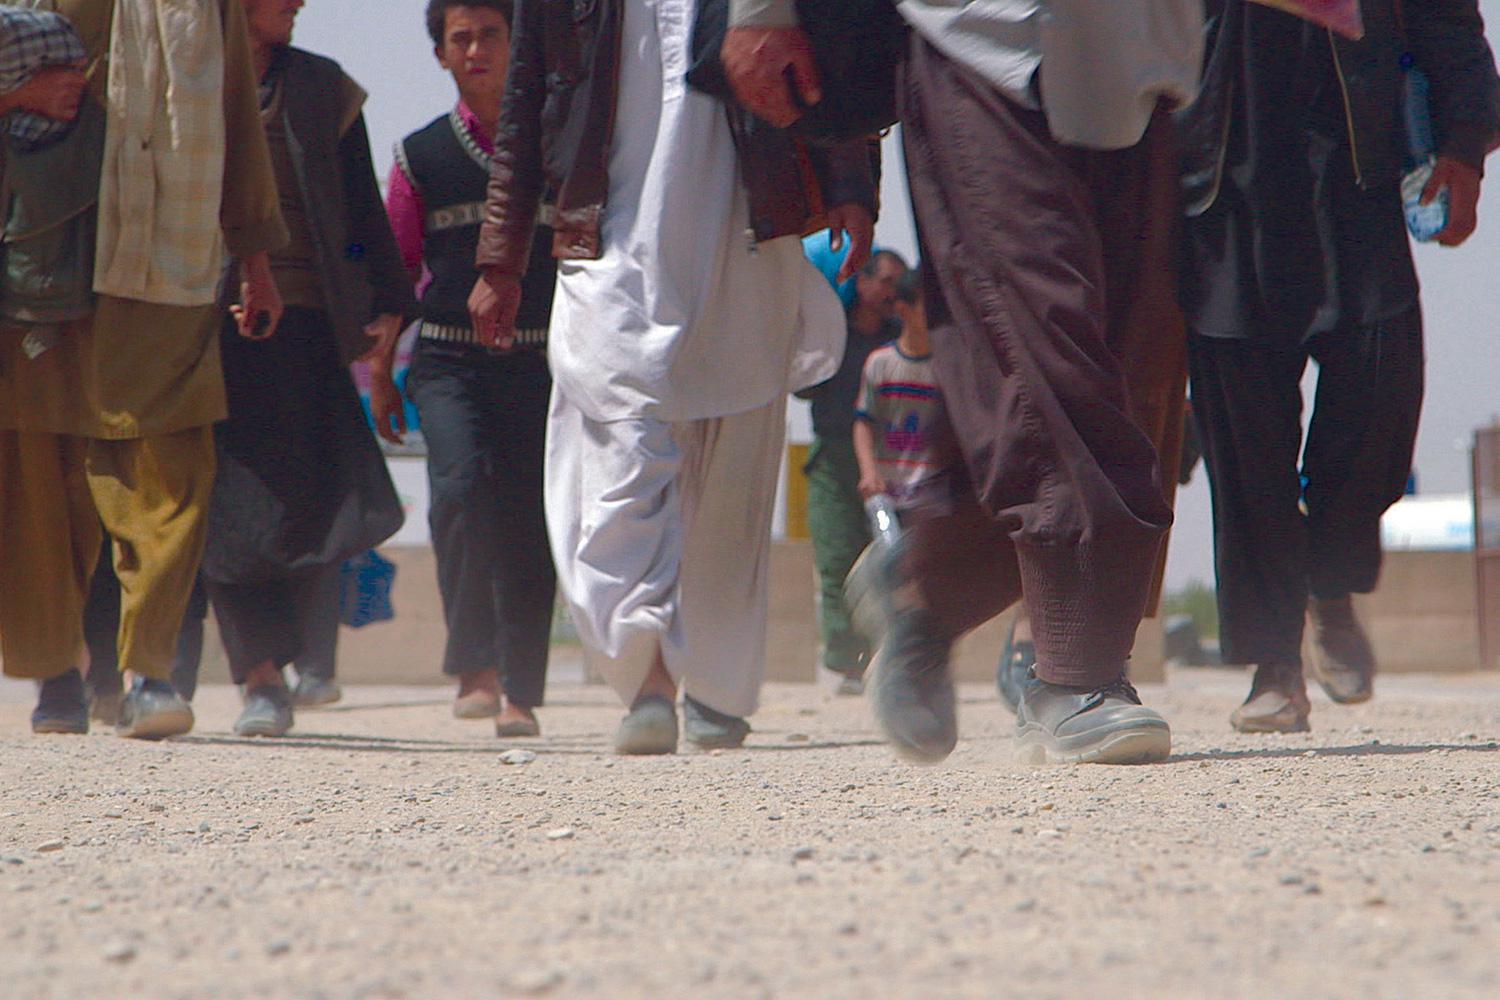 وزارت کشور ایران به ۳ استان ابلاغ کرد در صورت حضور مردم افغانستان در مرز آنها را برگردانند